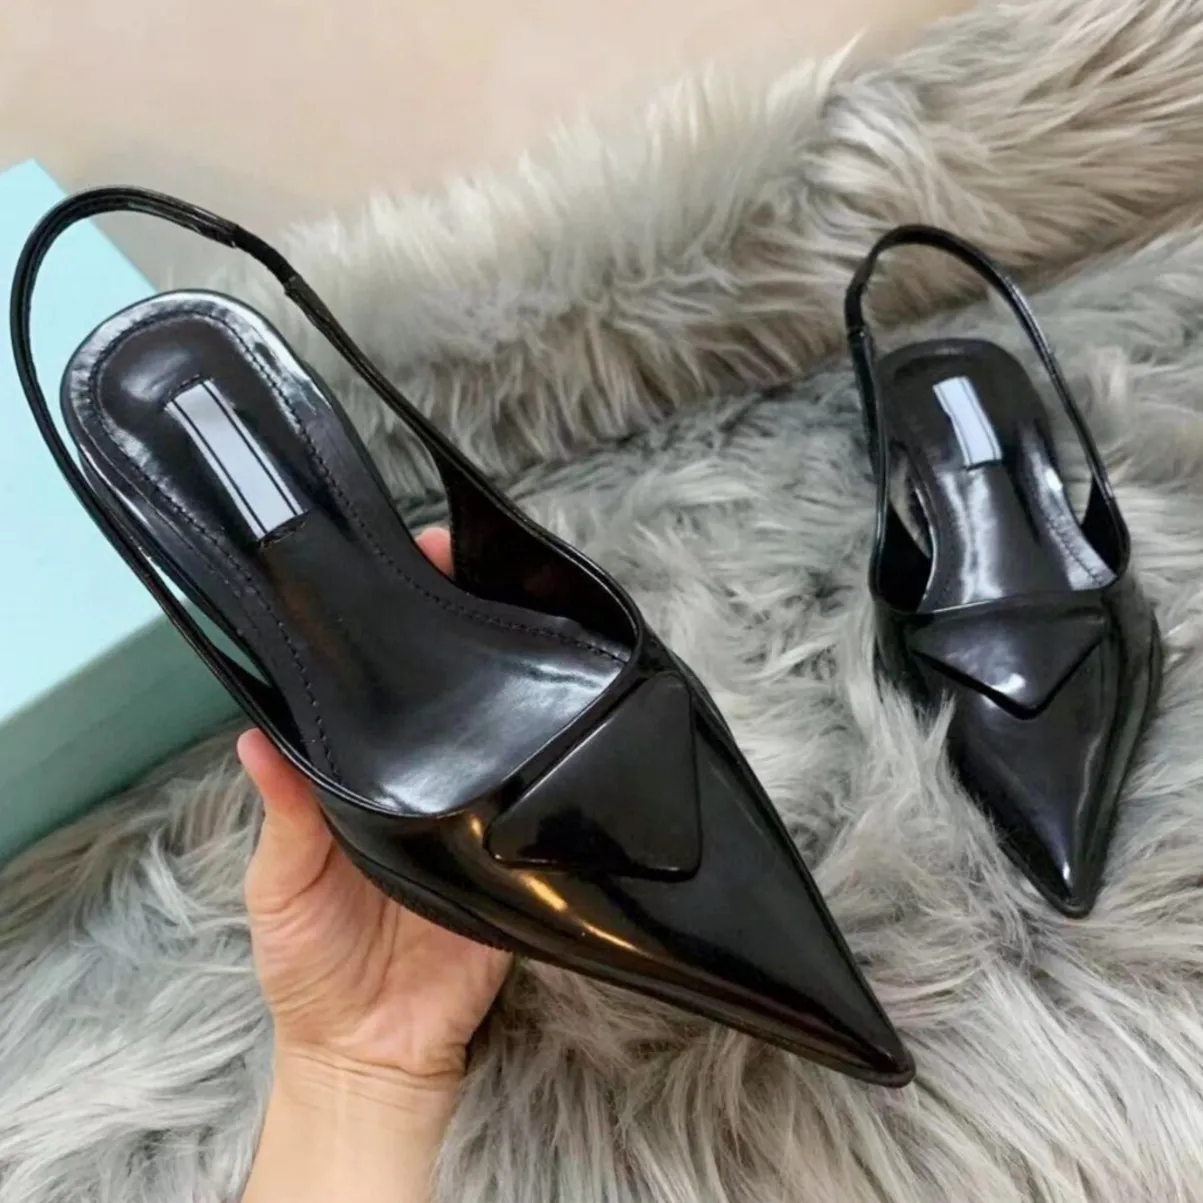 Sandali con tacco a punta Sandali con tacco alto Scarpe con tacco alto 3,5 cm Scarpe eleganti di lusso estive in vera pelle nera opaca taglia 35-40